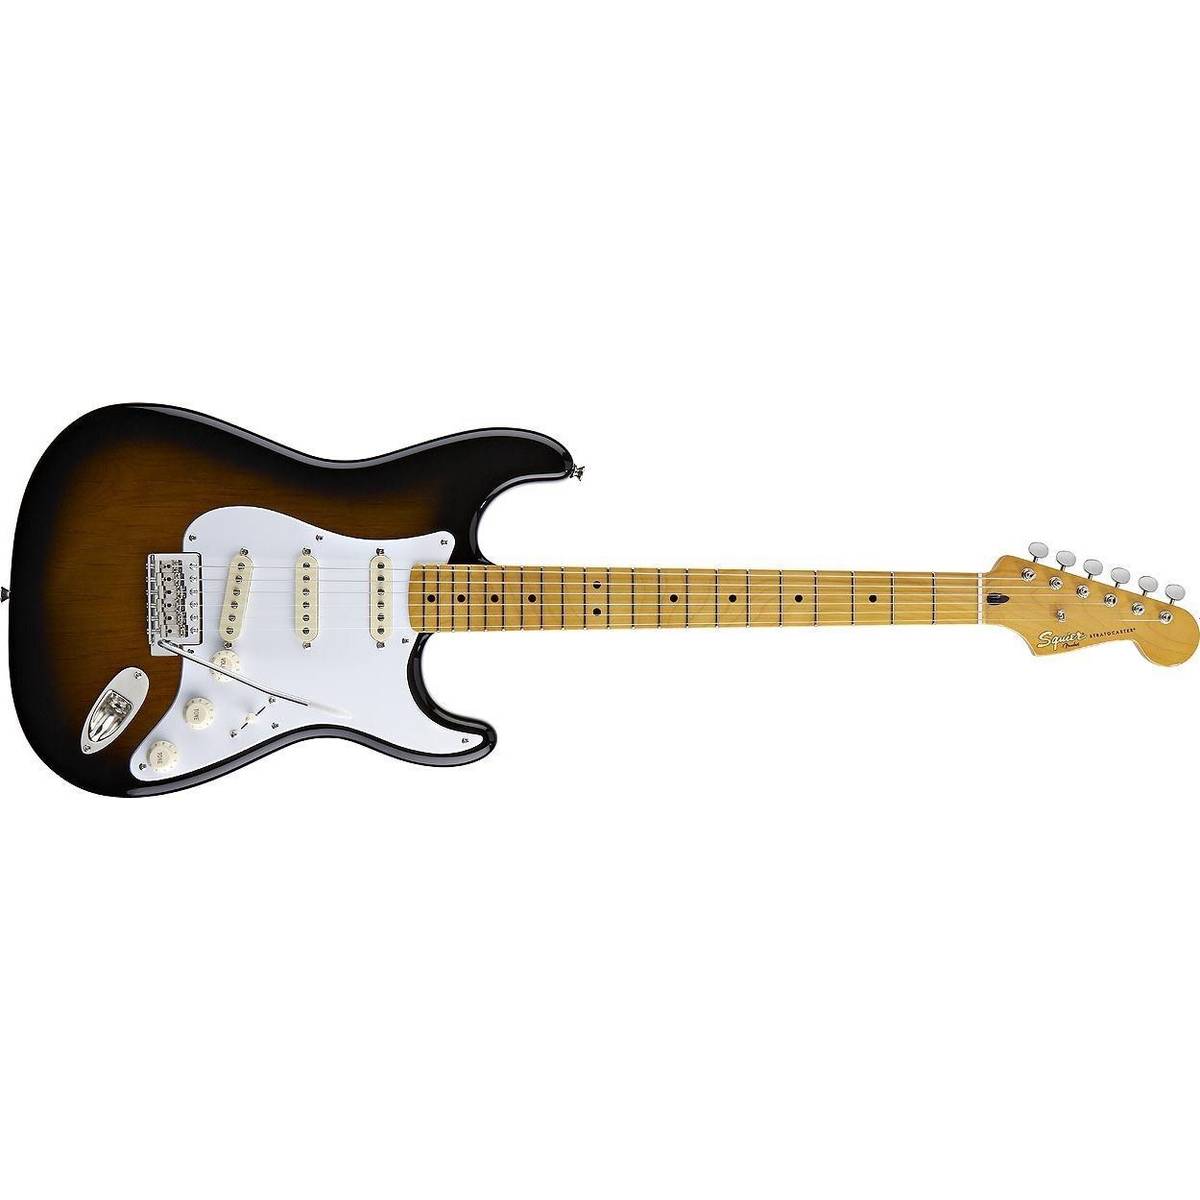 Squier By Fender Elektrisk gitarr (34 produkter) • Se priser nu »